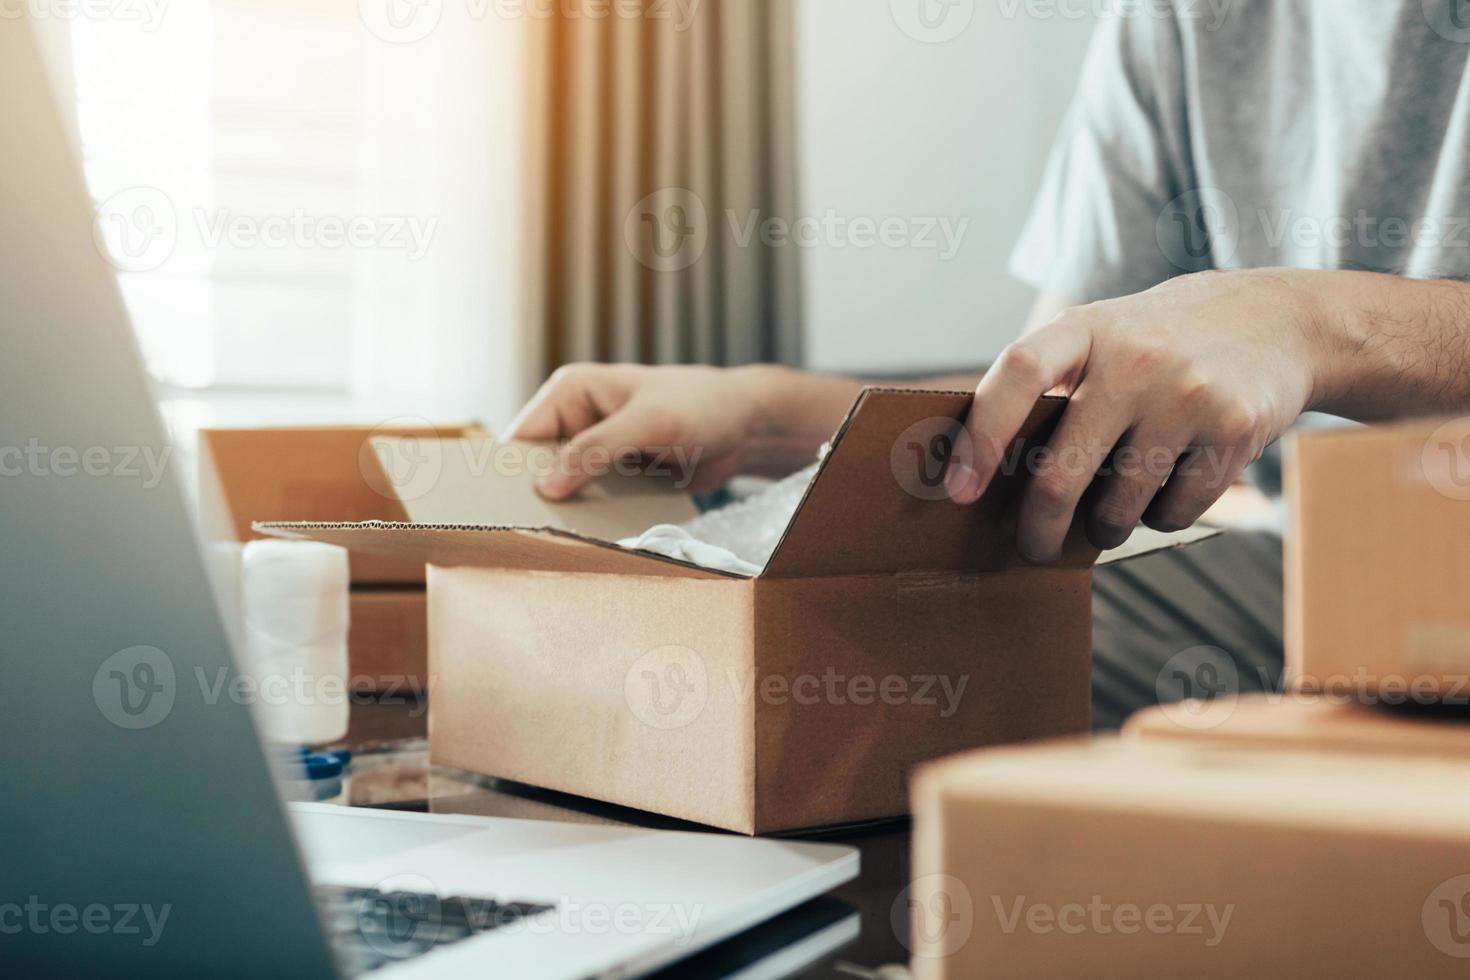 adolescente empresário asiático está abrindo uma caixa de papelão para colocar o produto que o cliente pediu na caixa para entregar o produto. foto